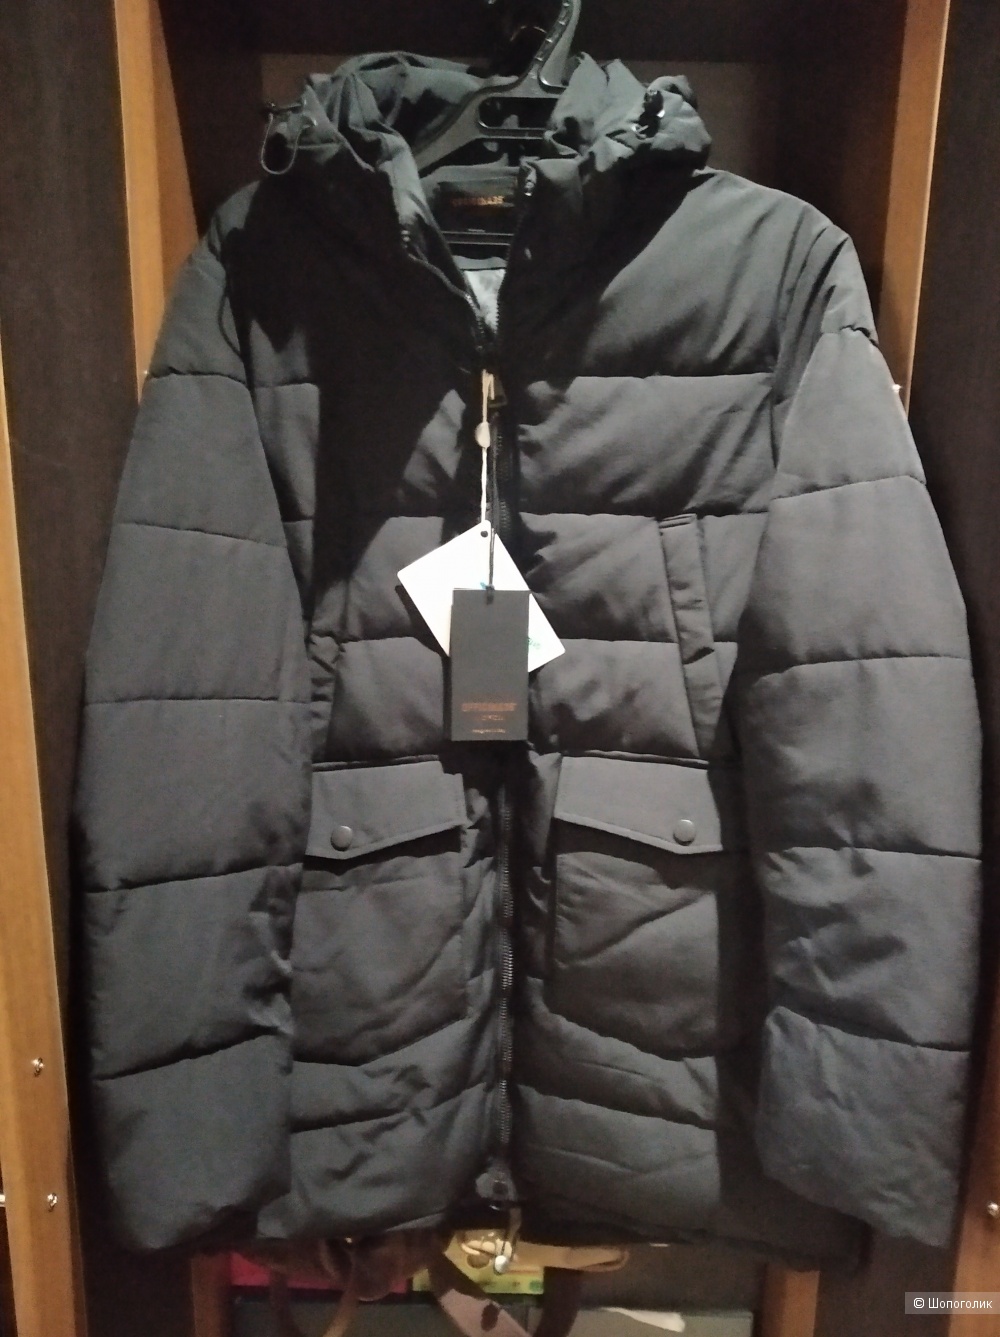 Куртка пальто OFFICINA 36 размер XL маломерный